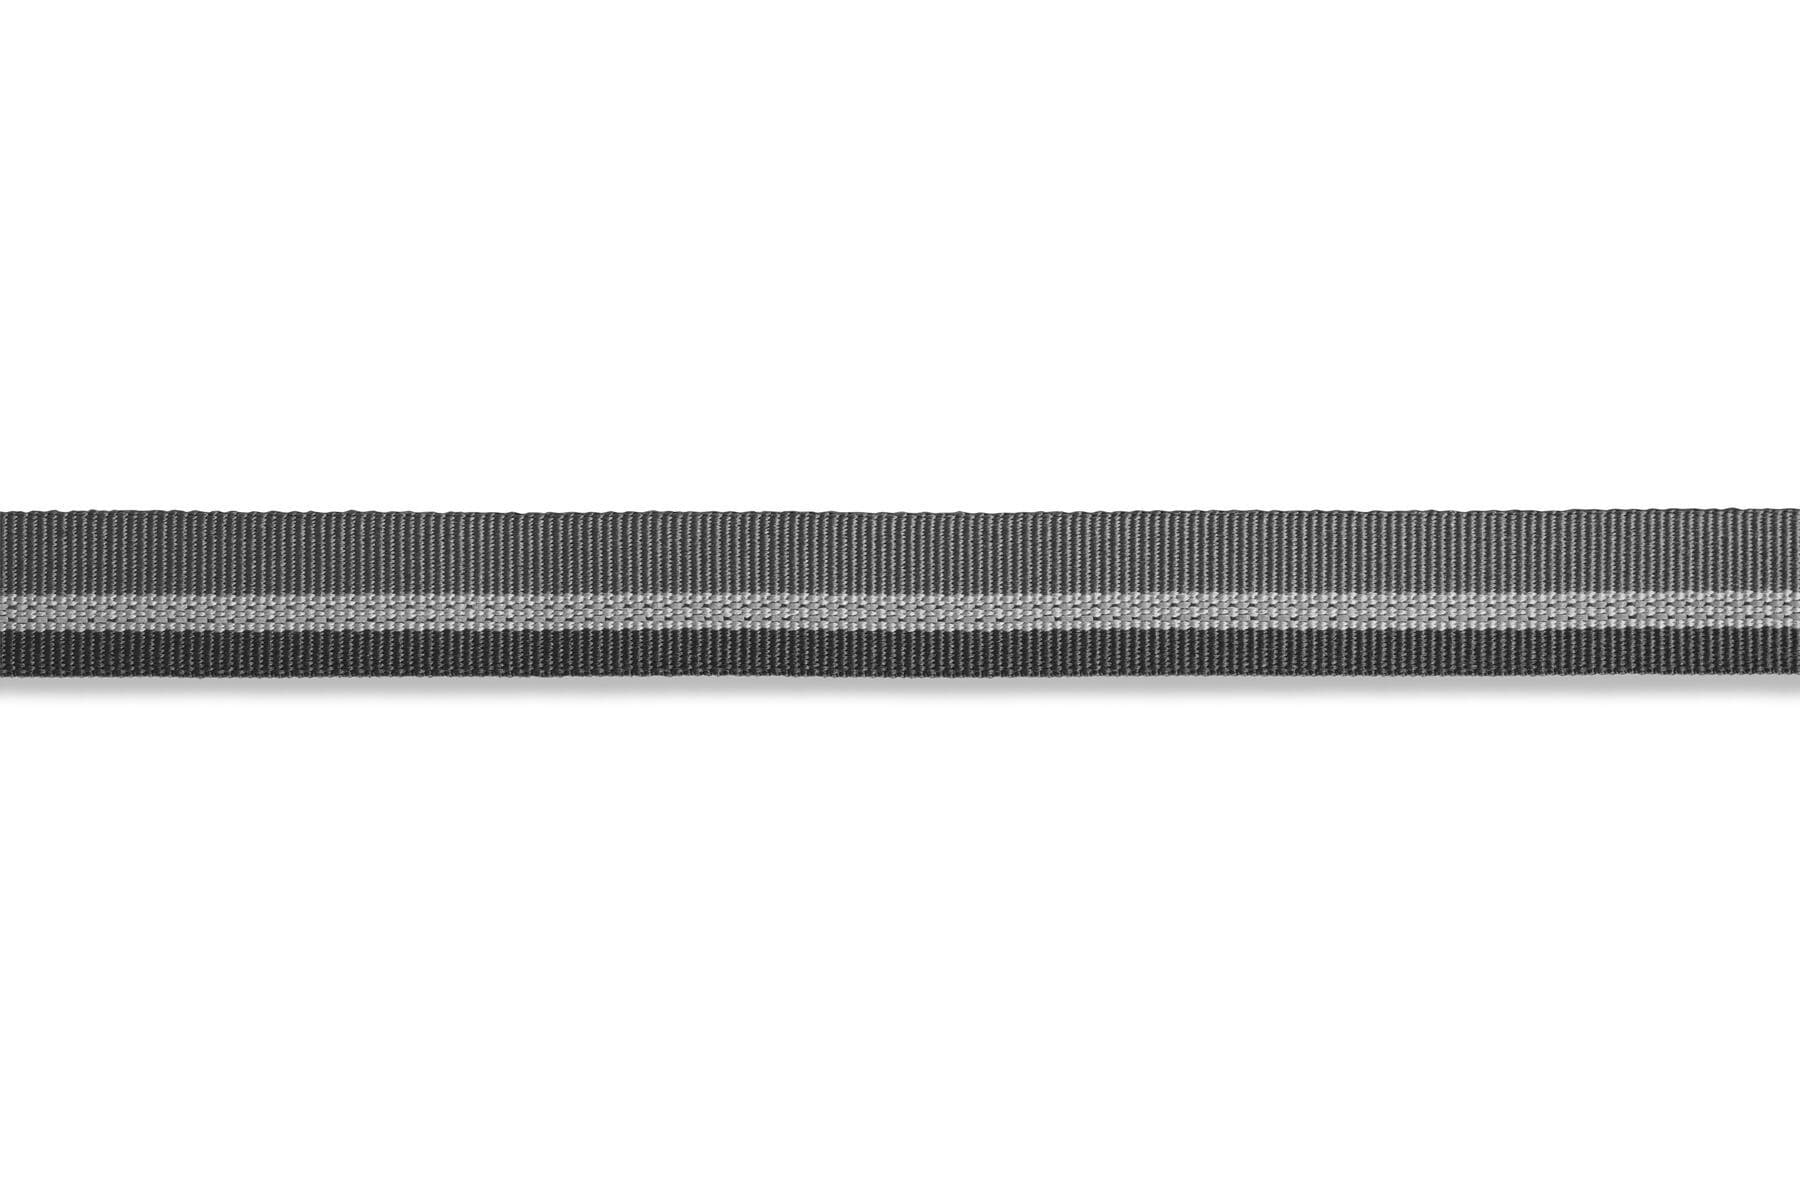 Collar para Perros Modelo Chain Reaction en Gris (Granite Gray) - Ruffwear